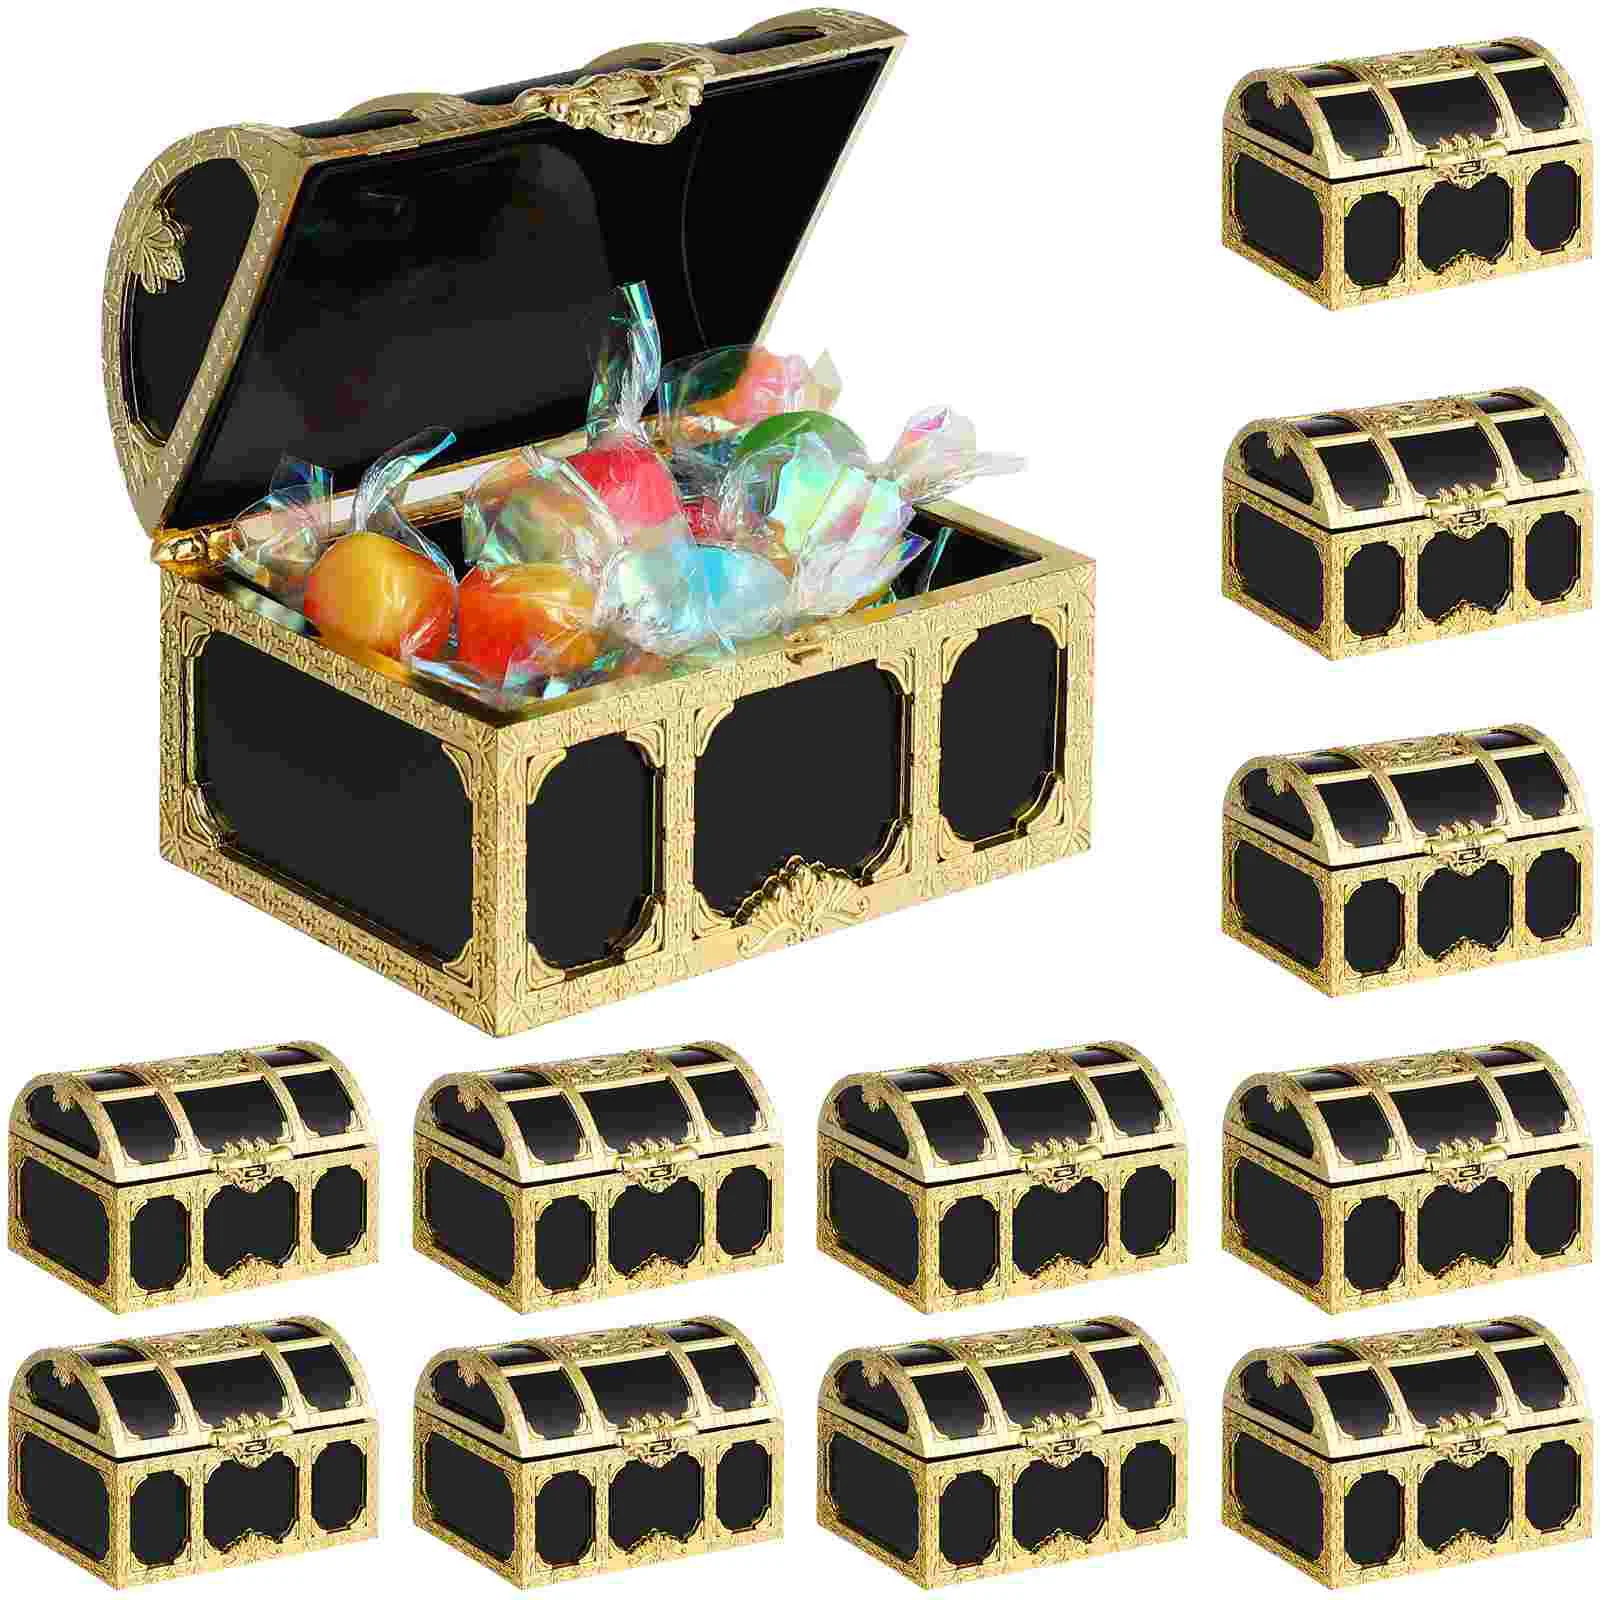 

12 шт. сахарная Коробка С Сокровищами, классные Ретро игрушки, маленькие призы для хранения монет, пиратские сундуки, детский держатель